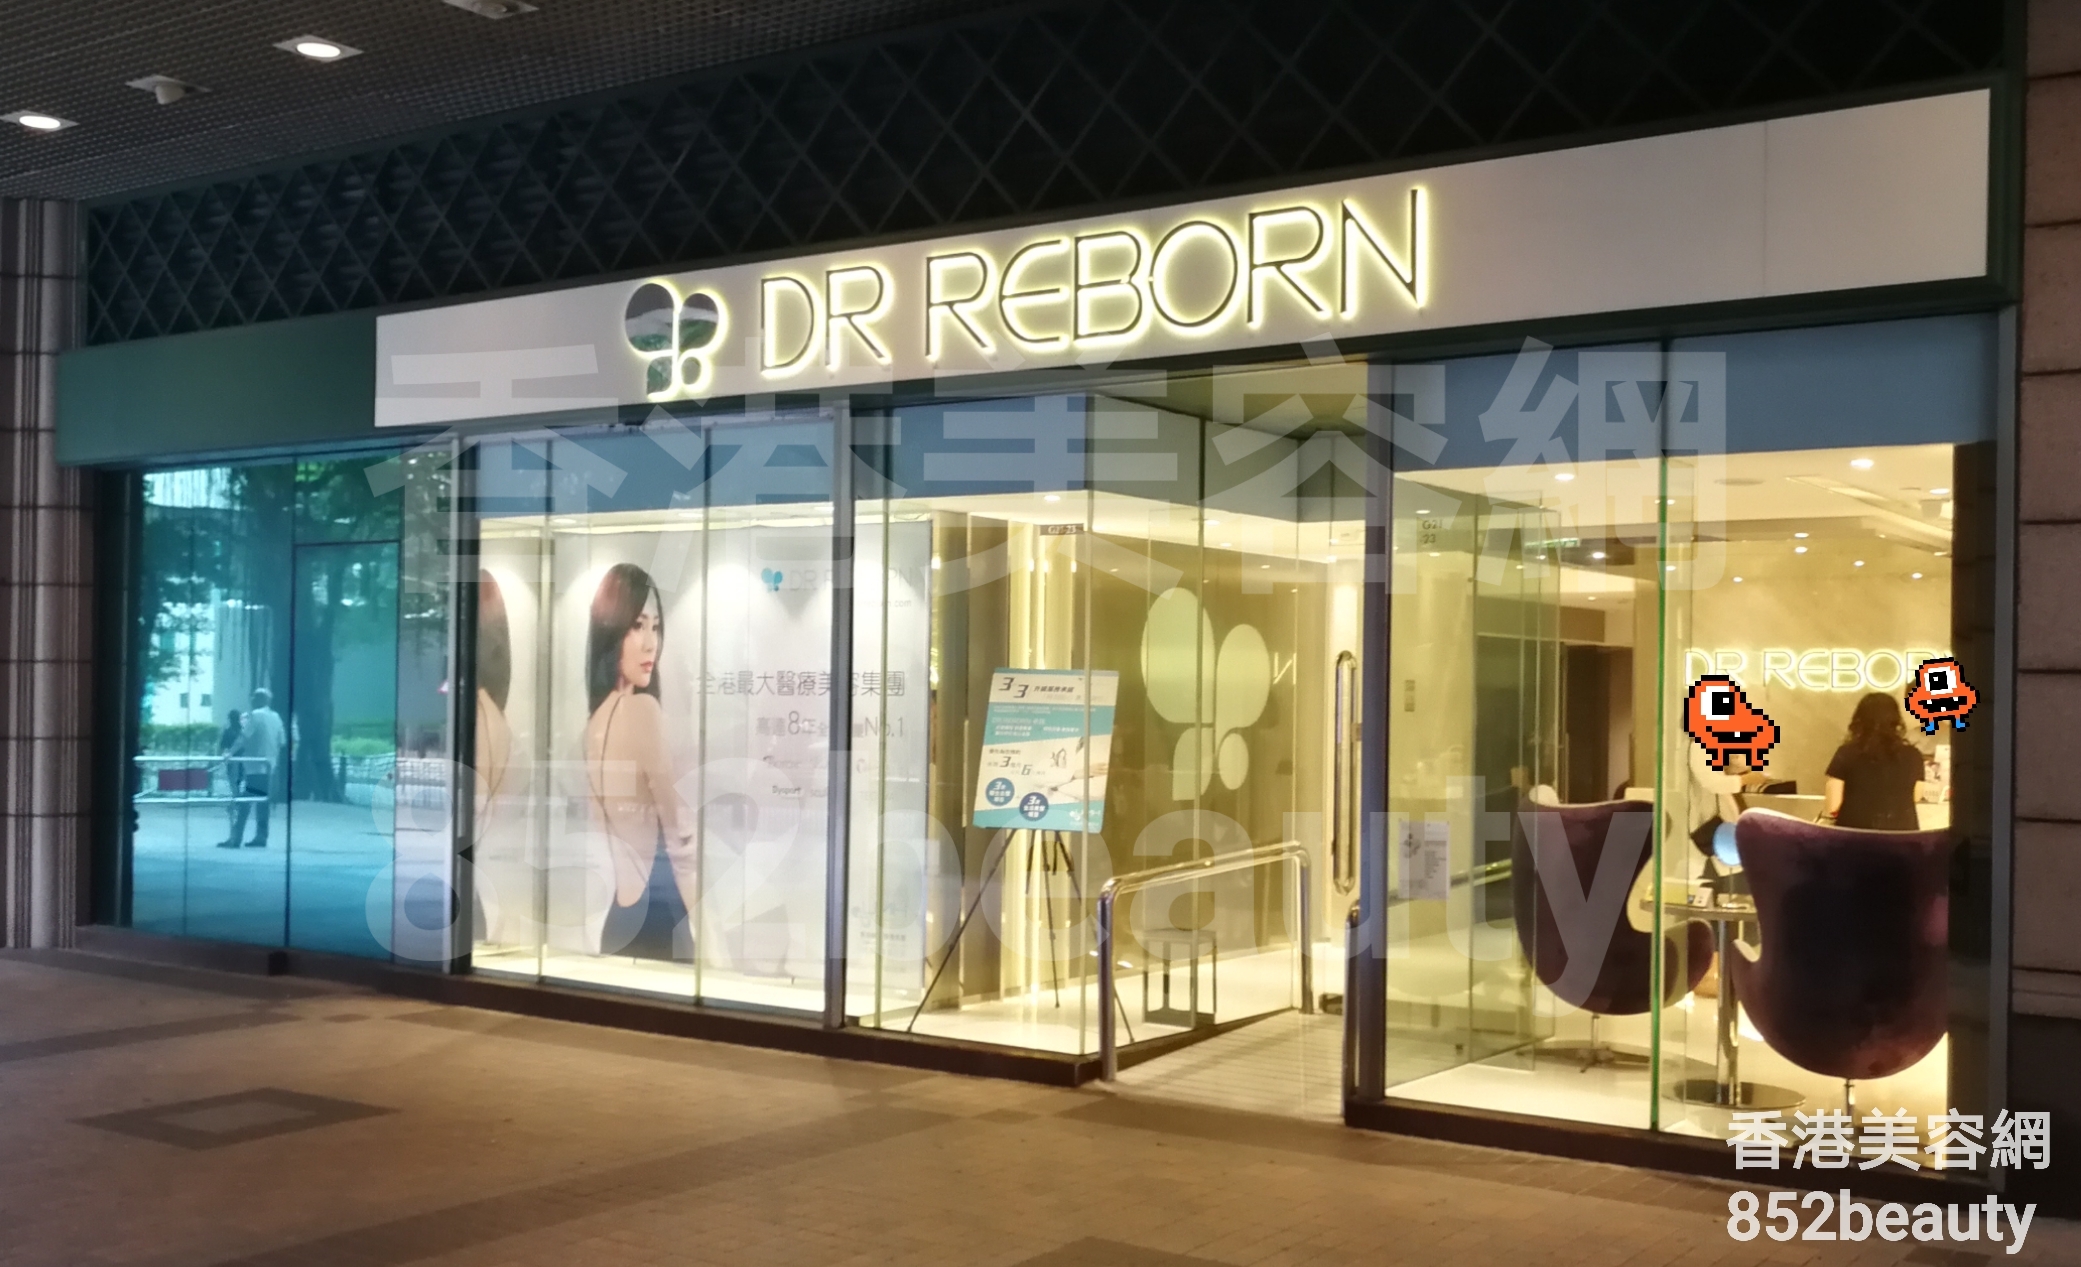 香港美容網 Hong Kong Beauty Salon 美容院 / 美容師: DR REBORN (將軍澳)